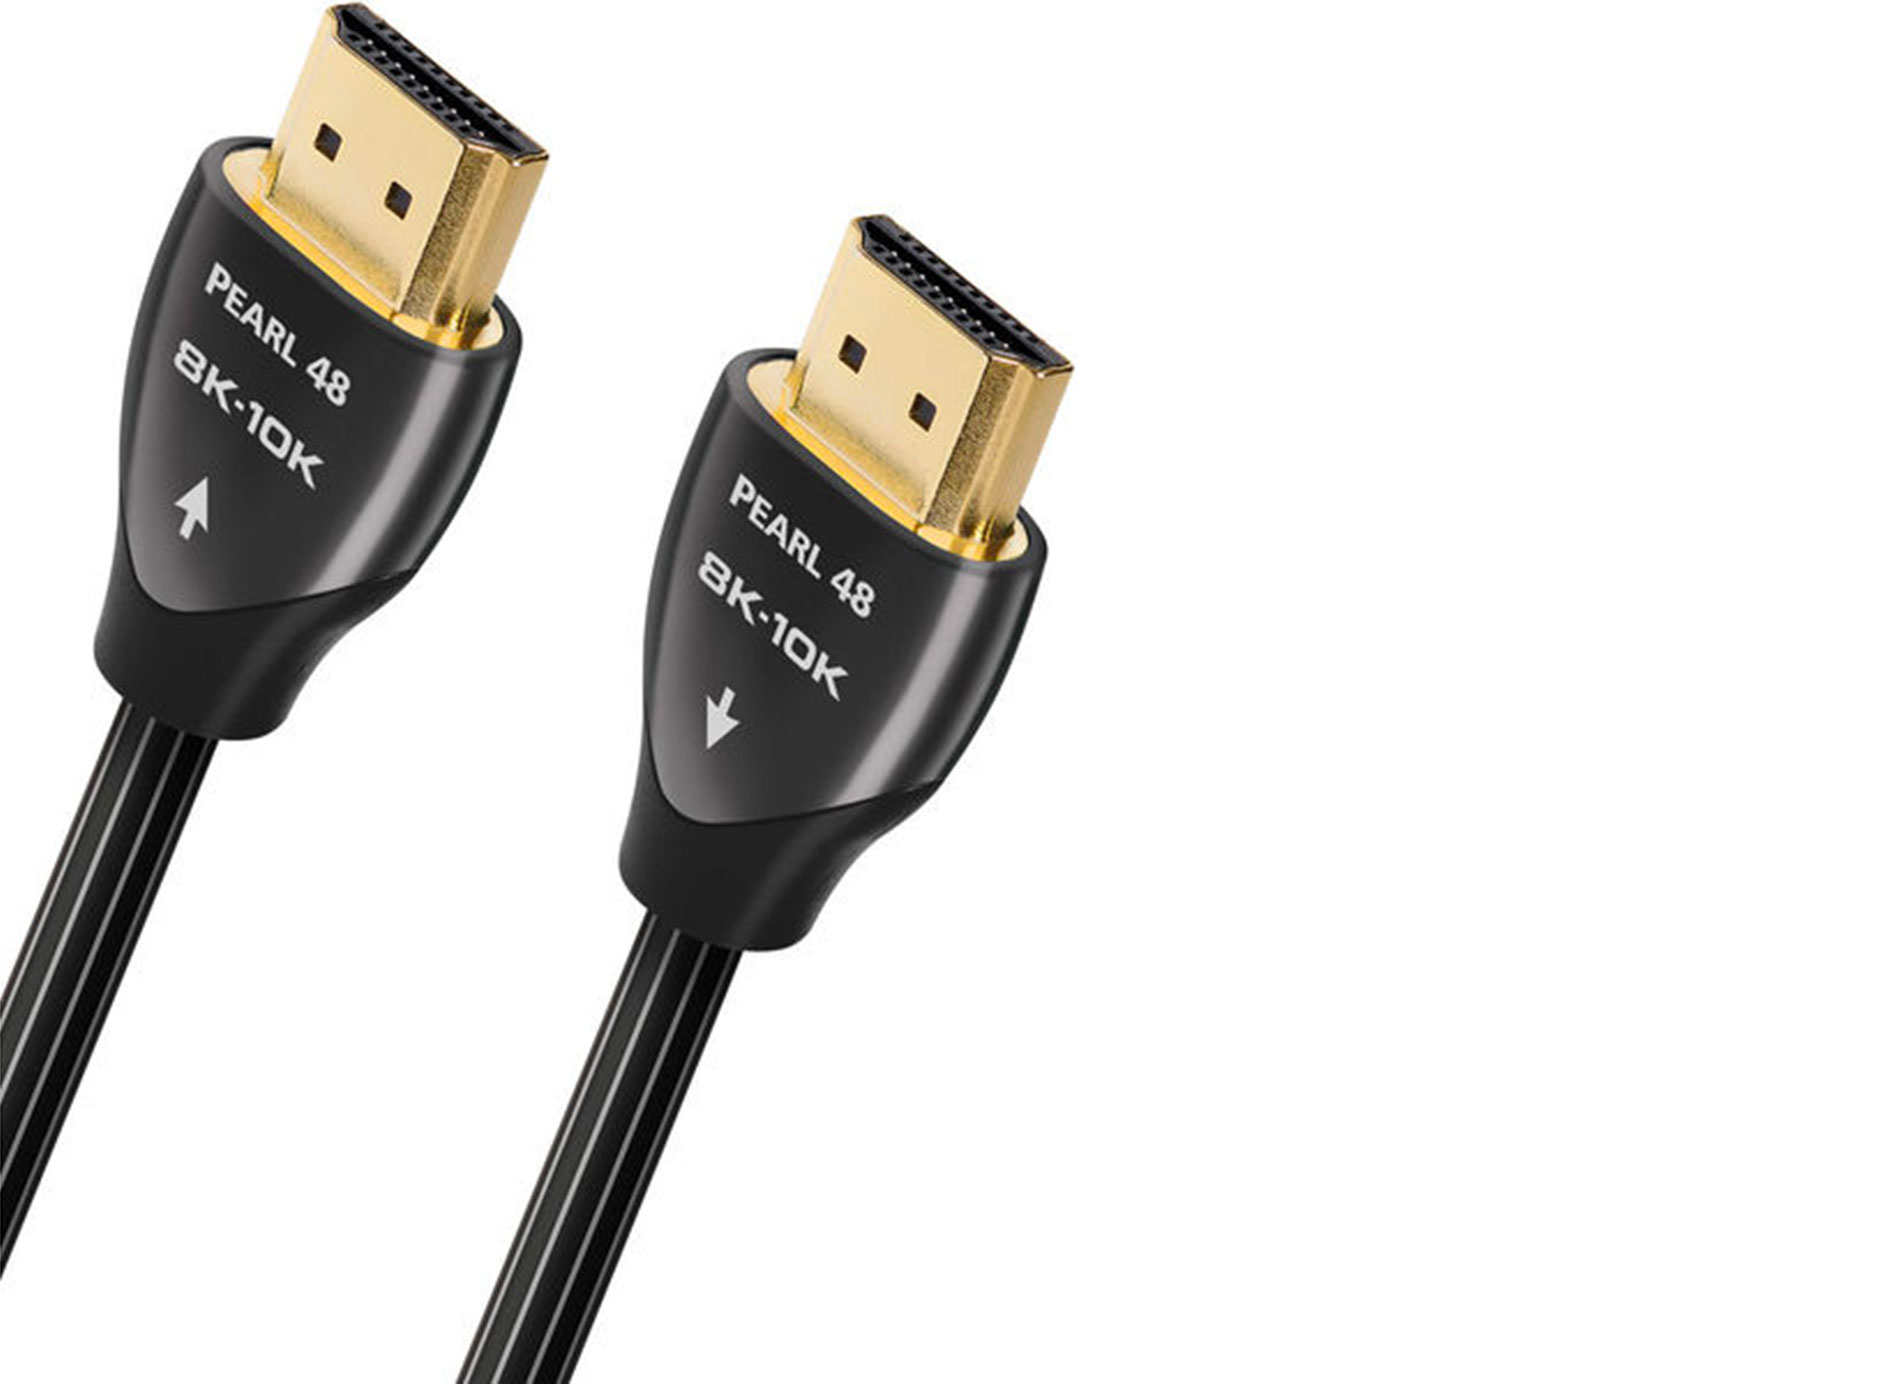 Comment reconnaitre un câble HDMI arc ?